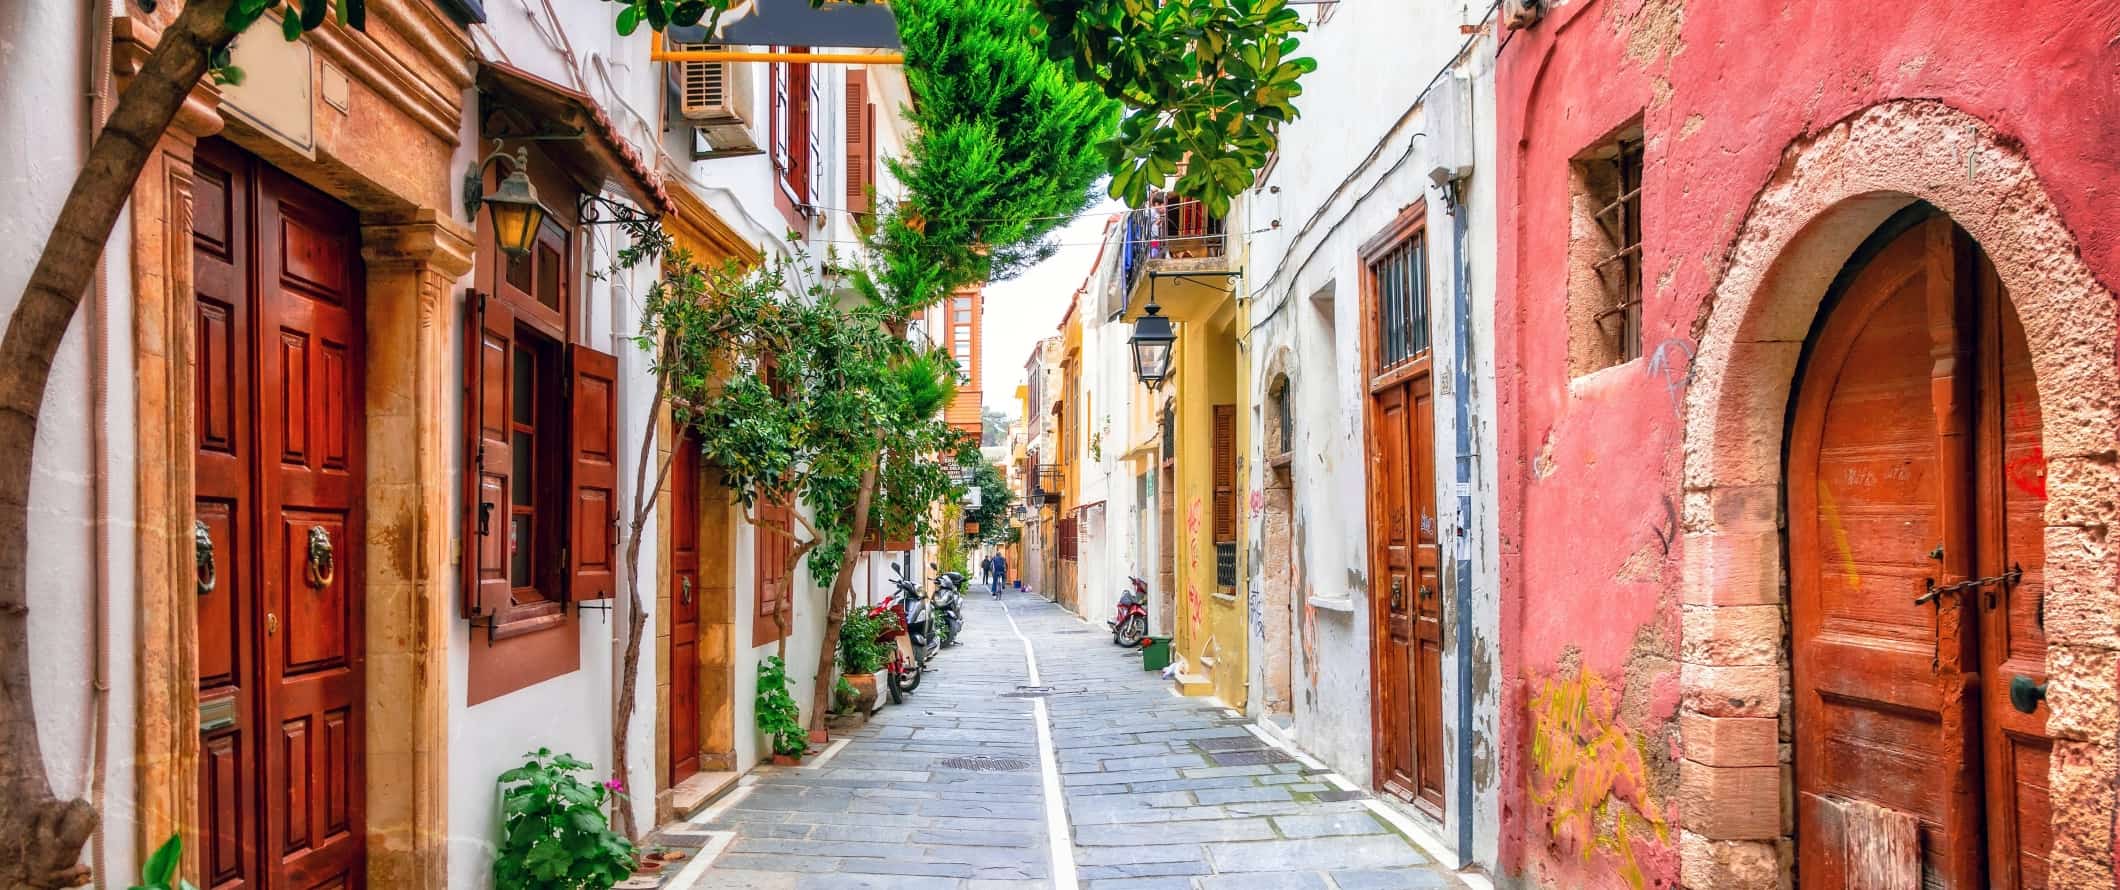 Uma rua pavimentada com casas coloridas com portas de madeira na ilha de Creta, na Grécia.